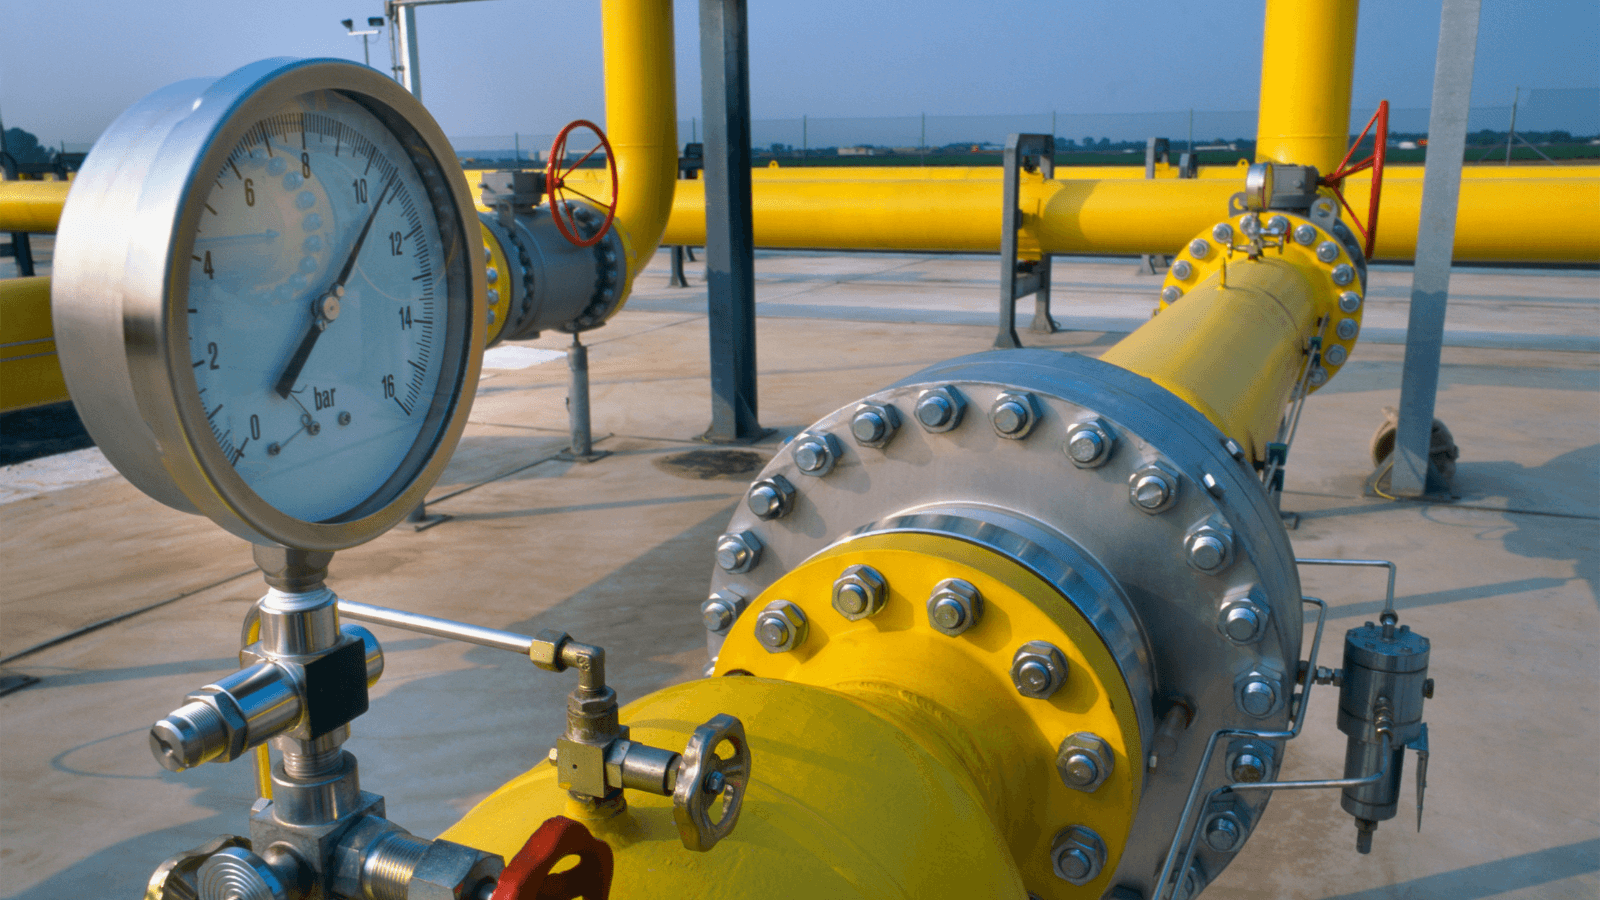 Photo of yellow methane pipelines